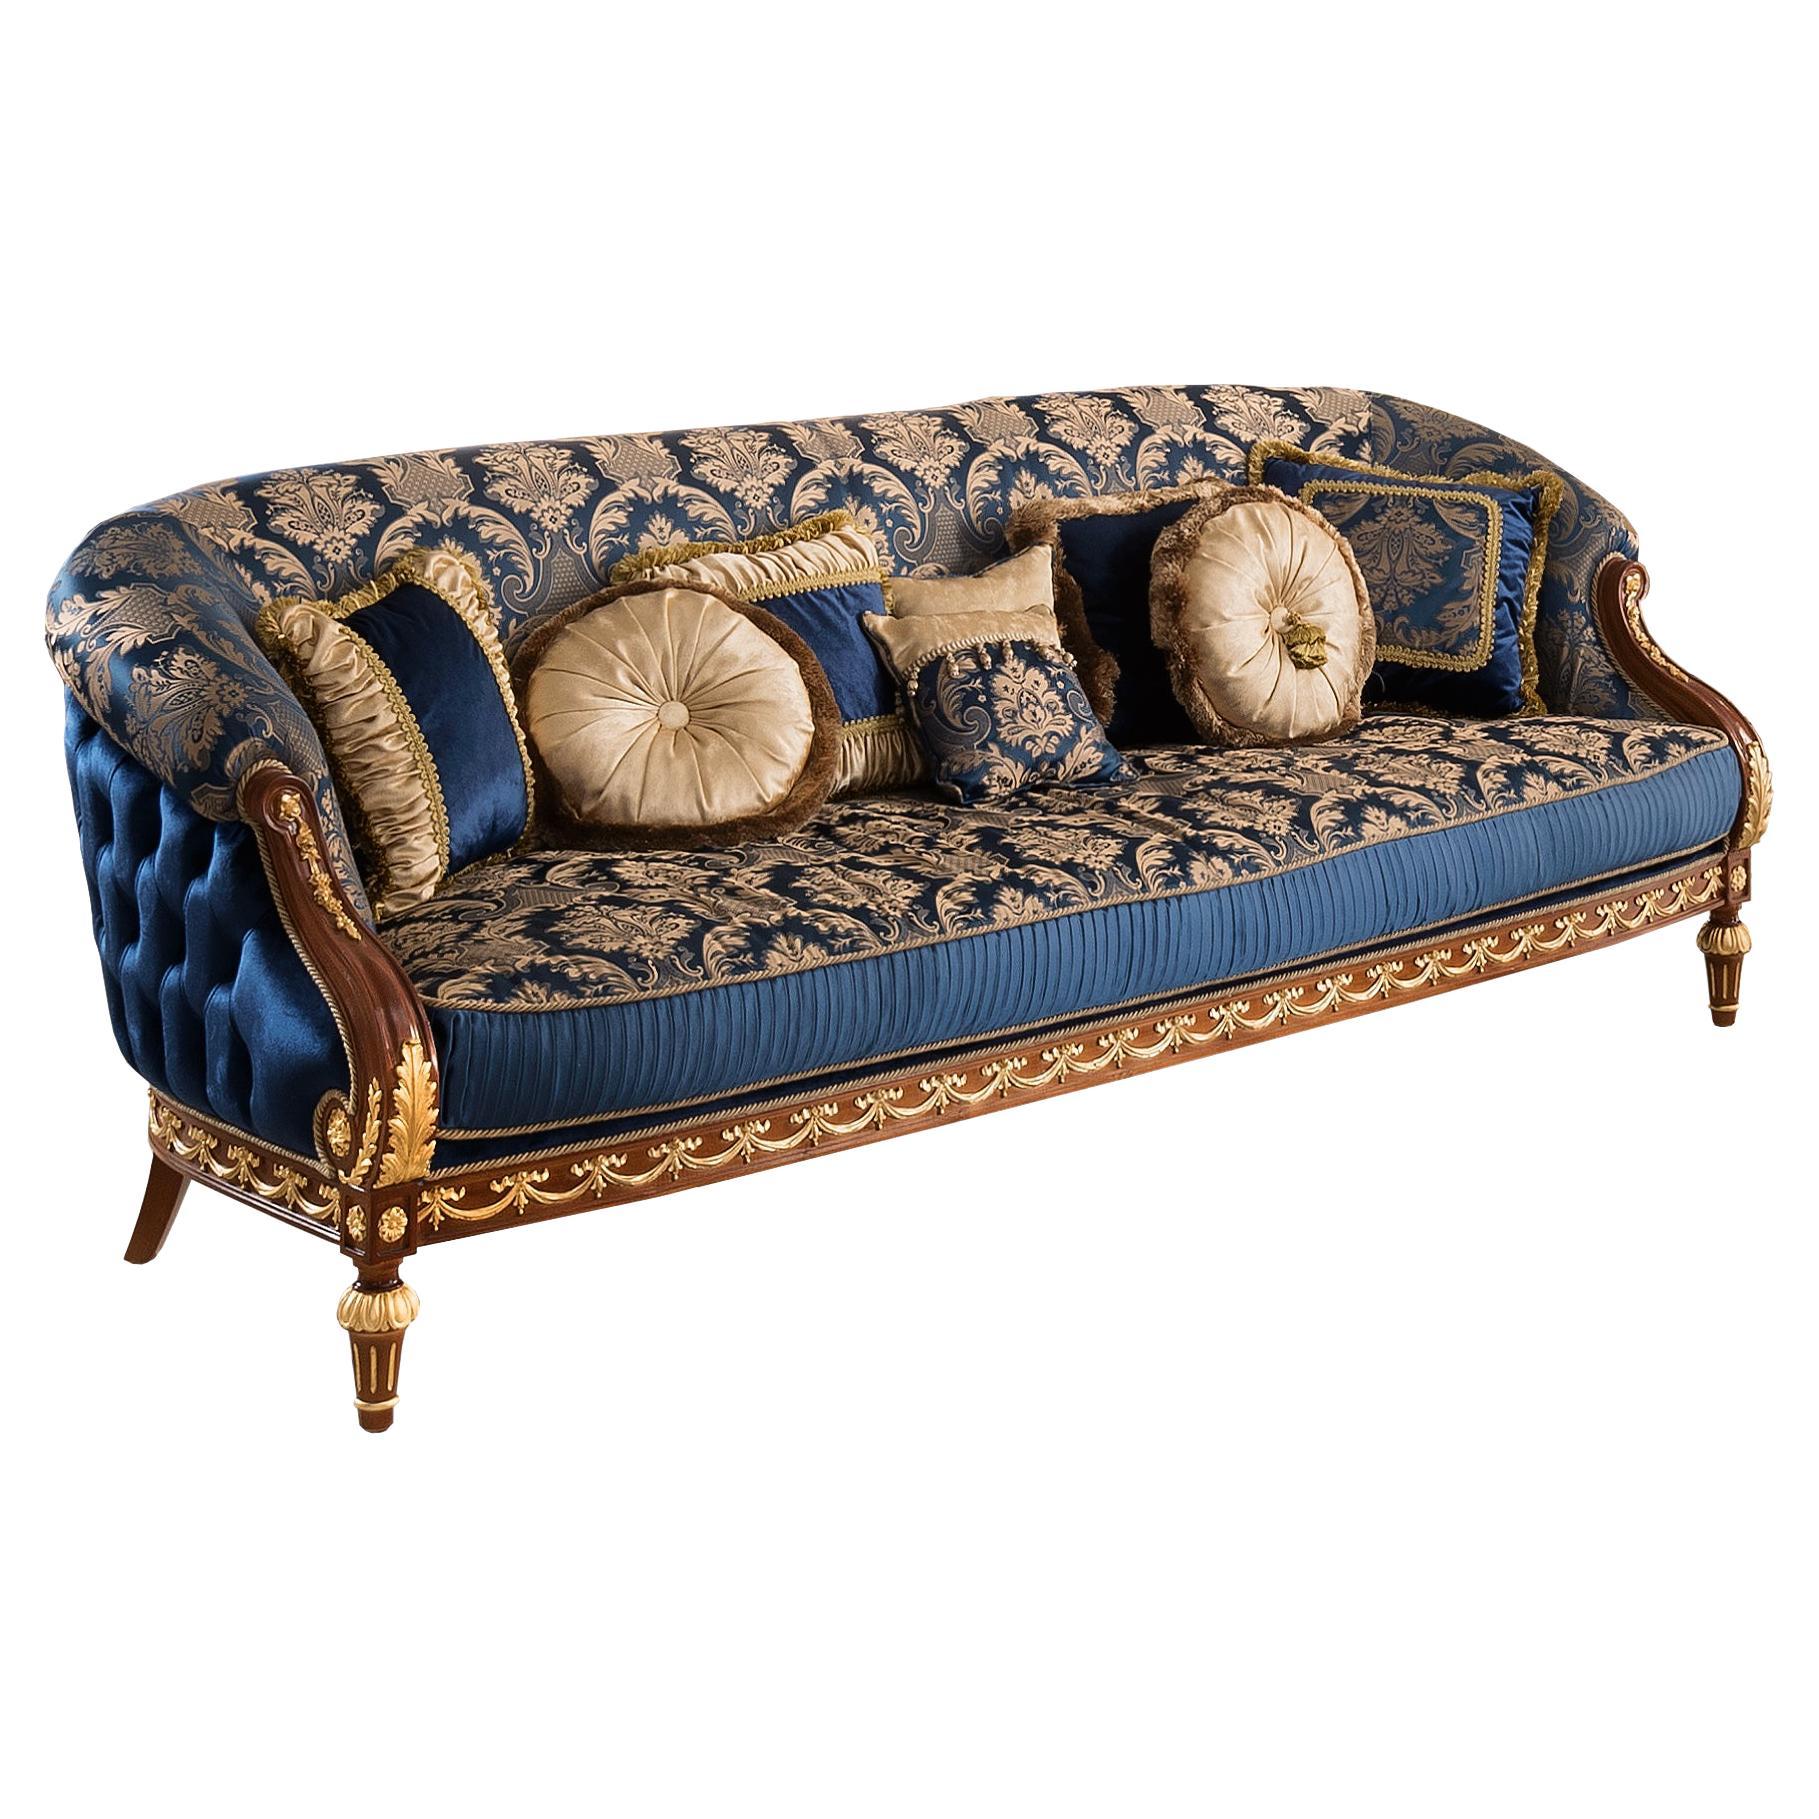  Canapé néoclassique Royal en bois de cerisier de haute qualité et décor de feuilles d'or brillantes